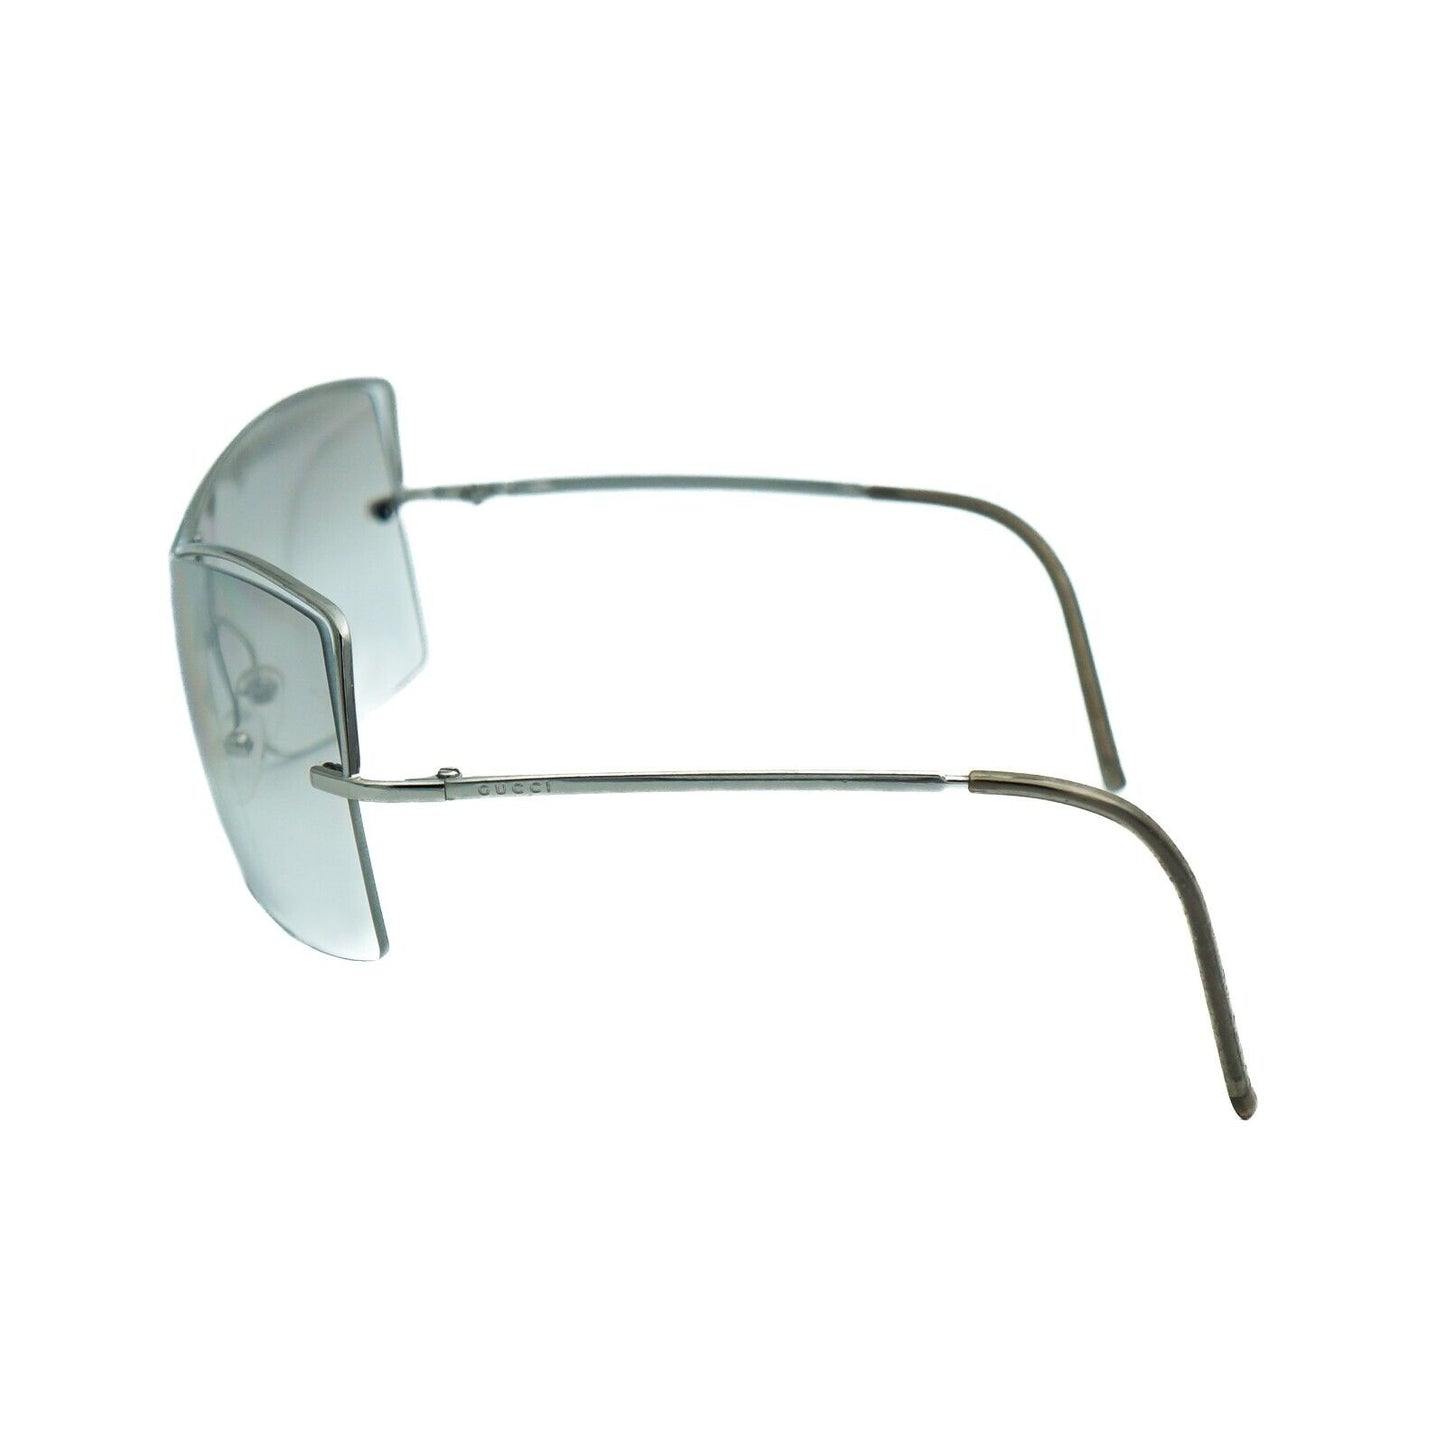 GUCCI GG 2684 Rimless White Silver Sunglasses Vintage 90s 00s